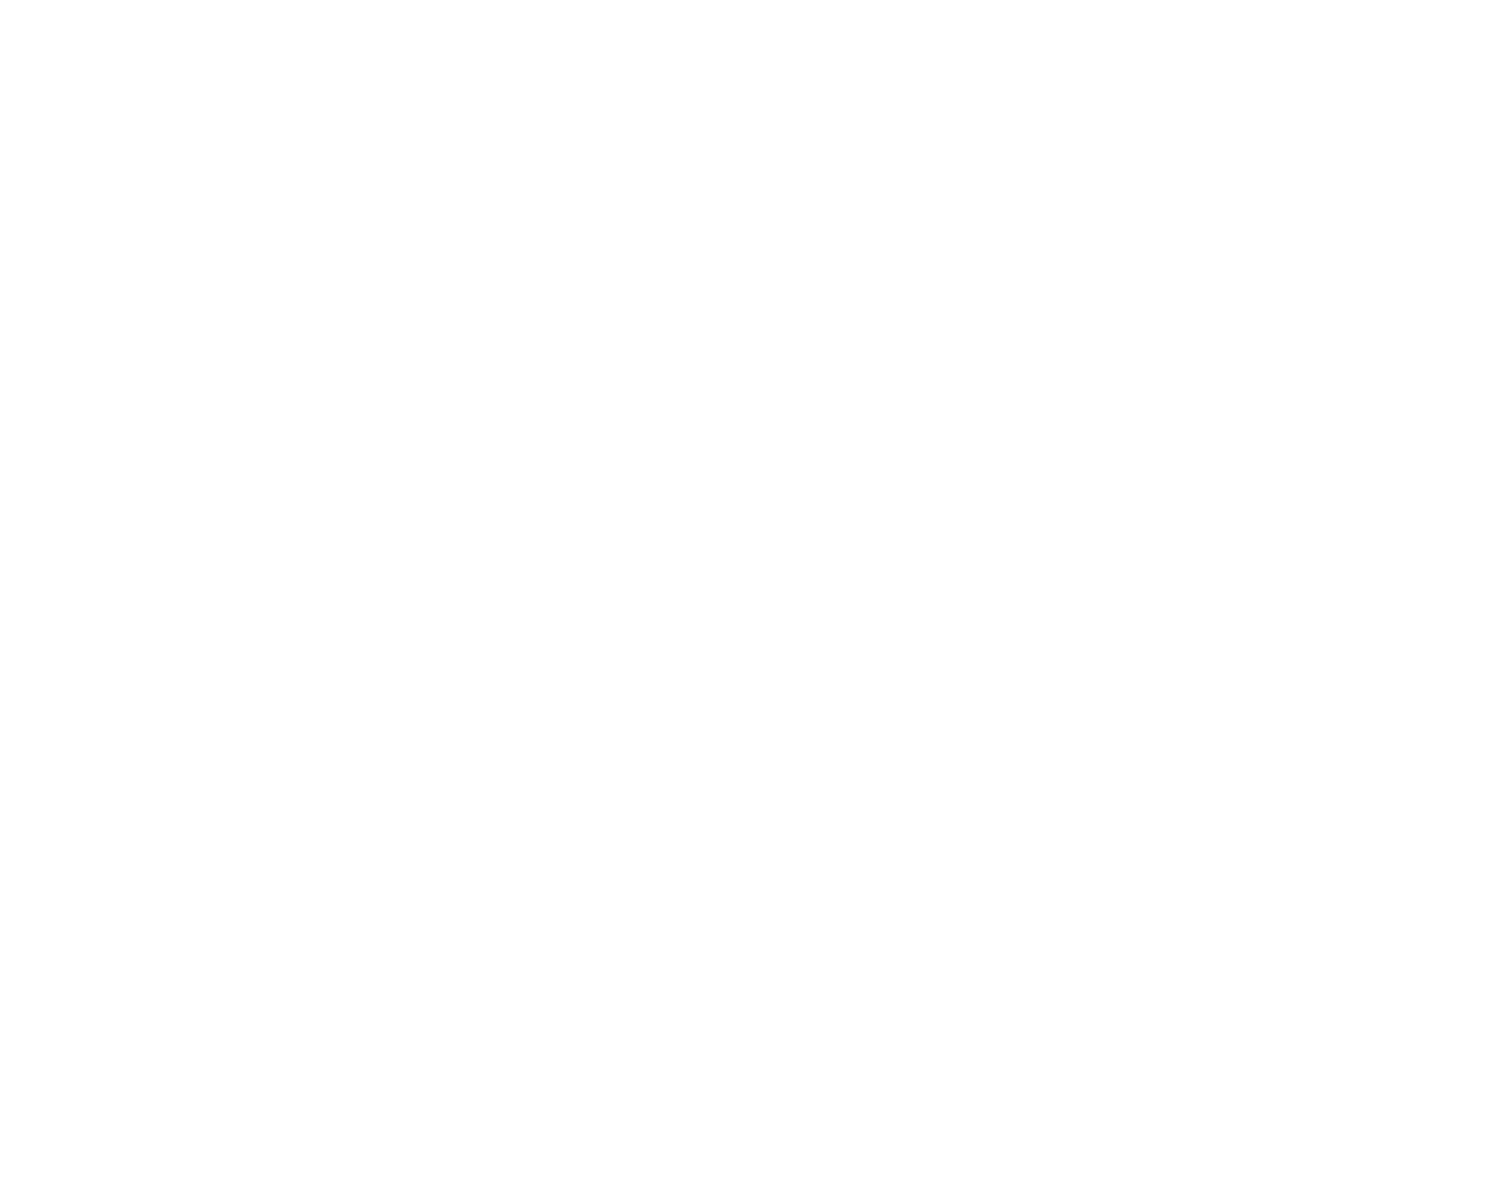 Planq Studio